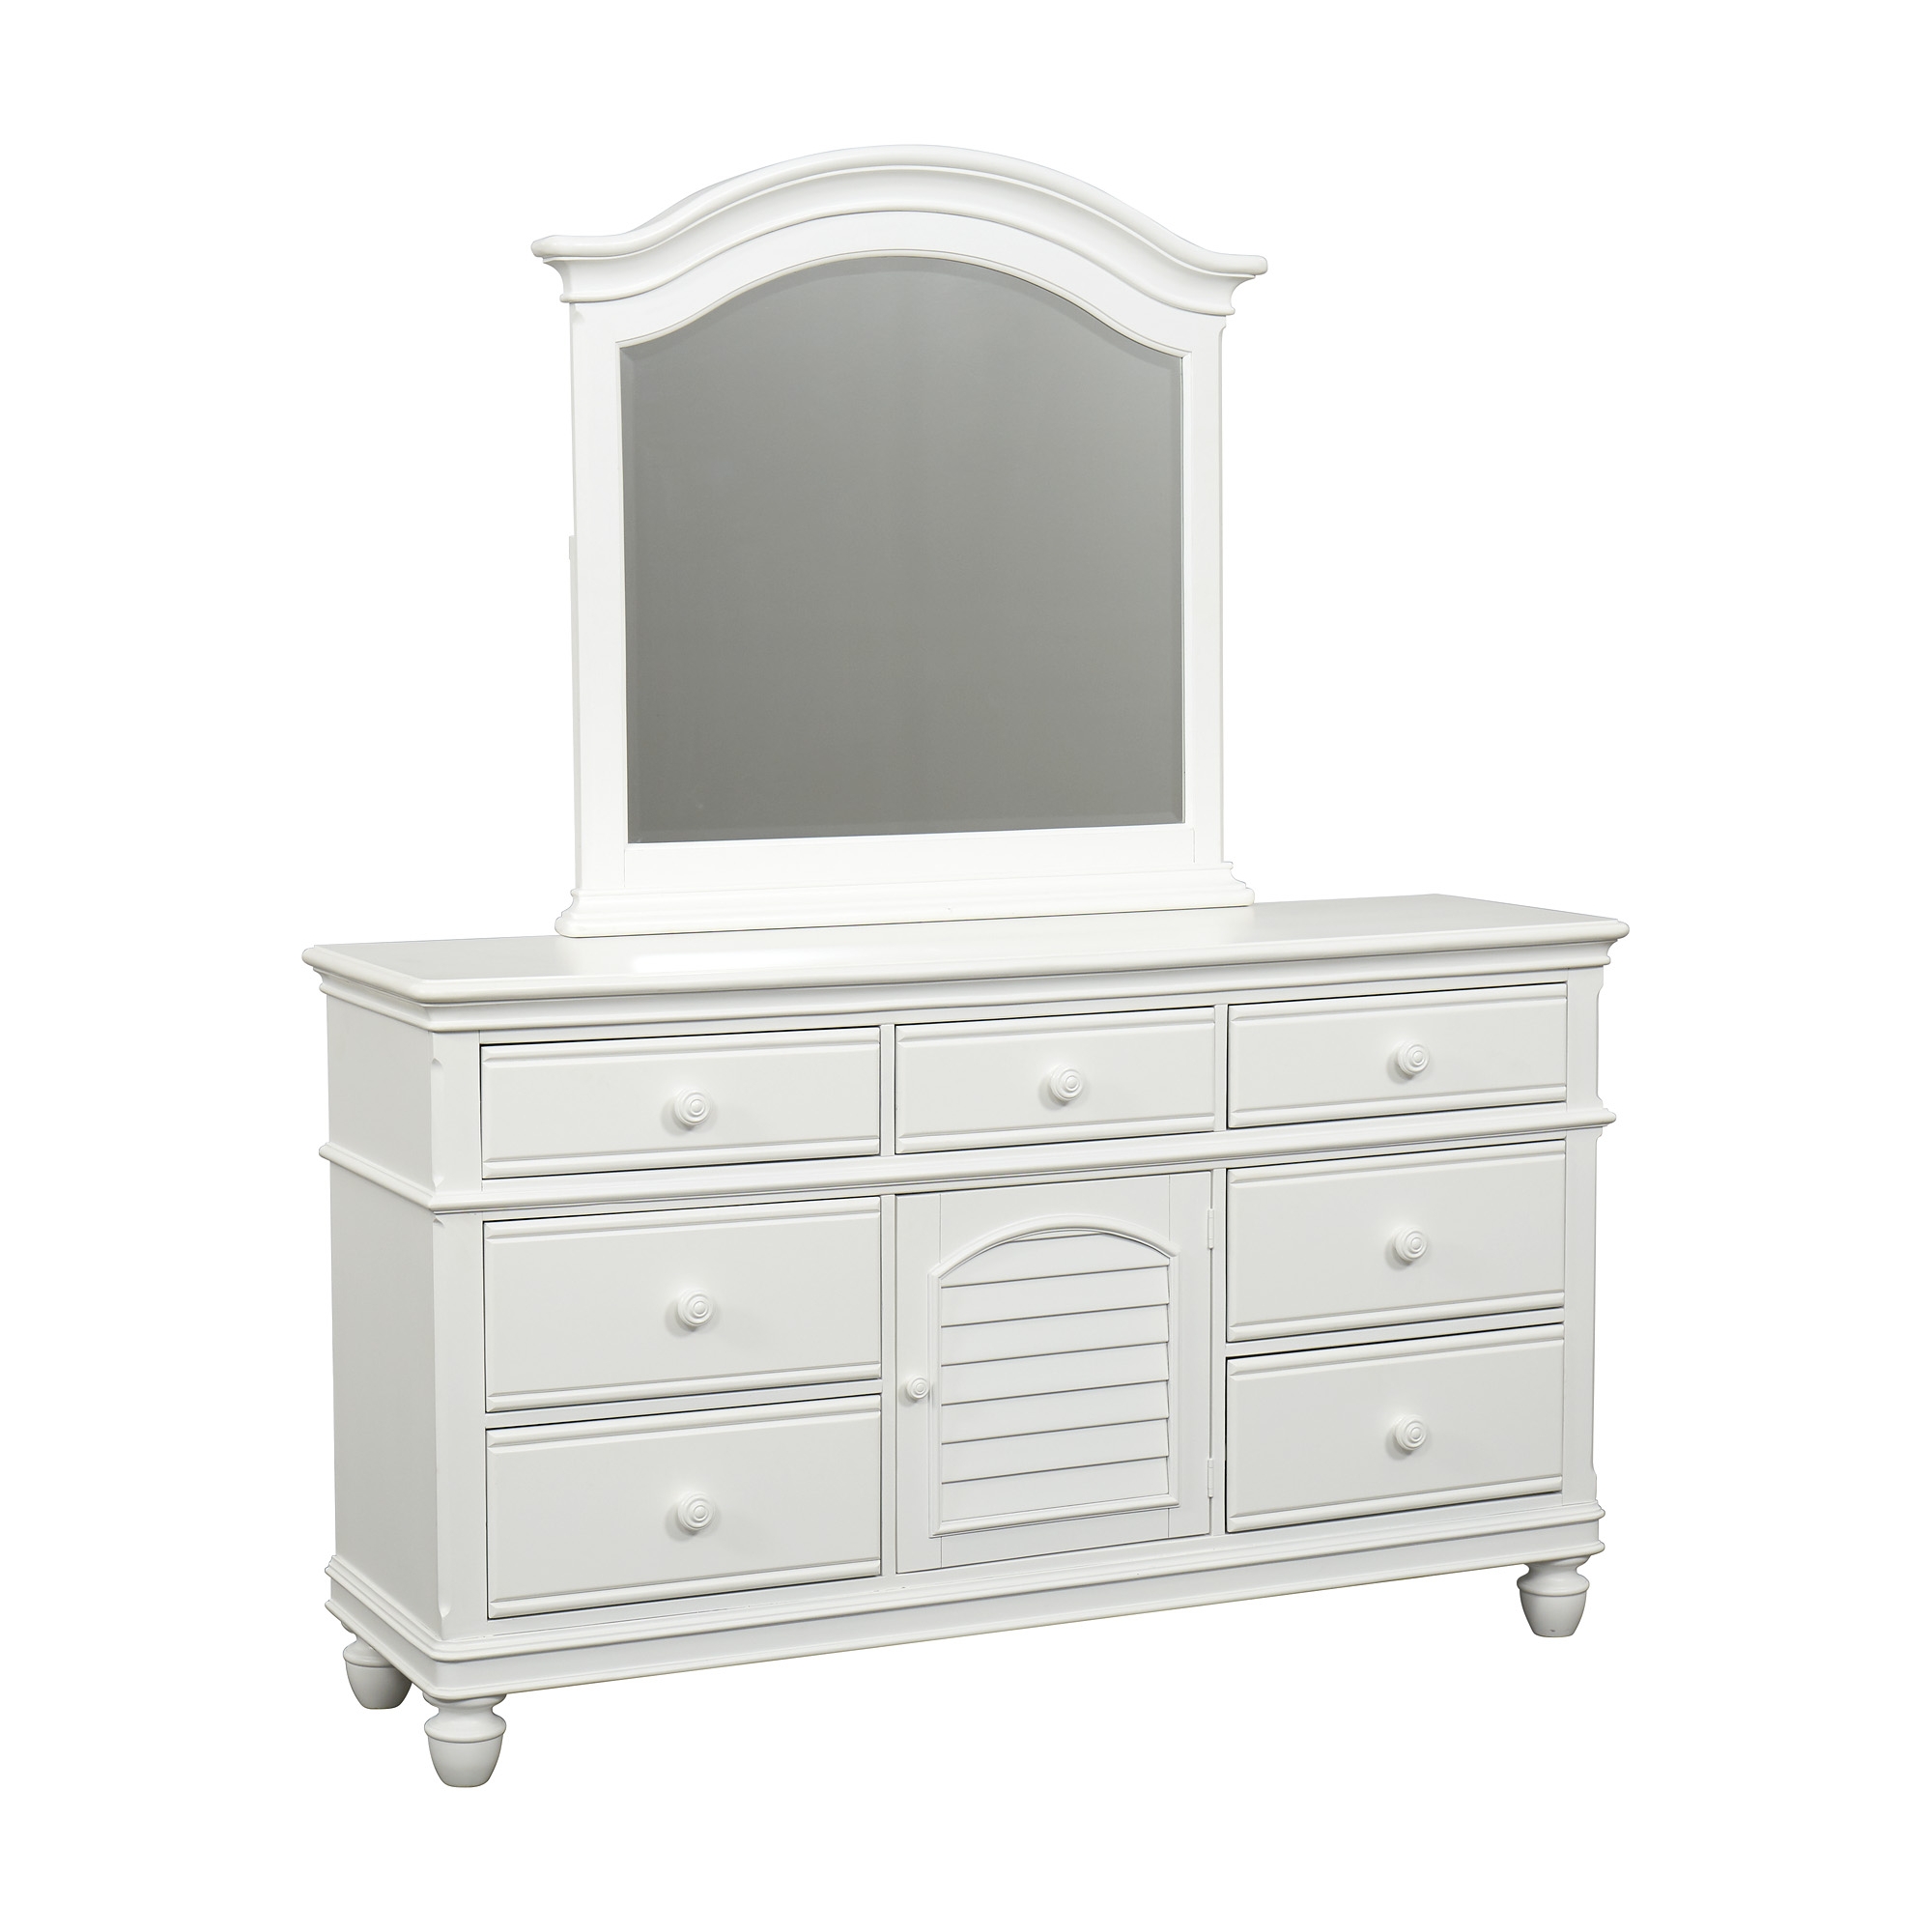 Coastal Retreat Dresser With Mirror, Dresser White With Mirror